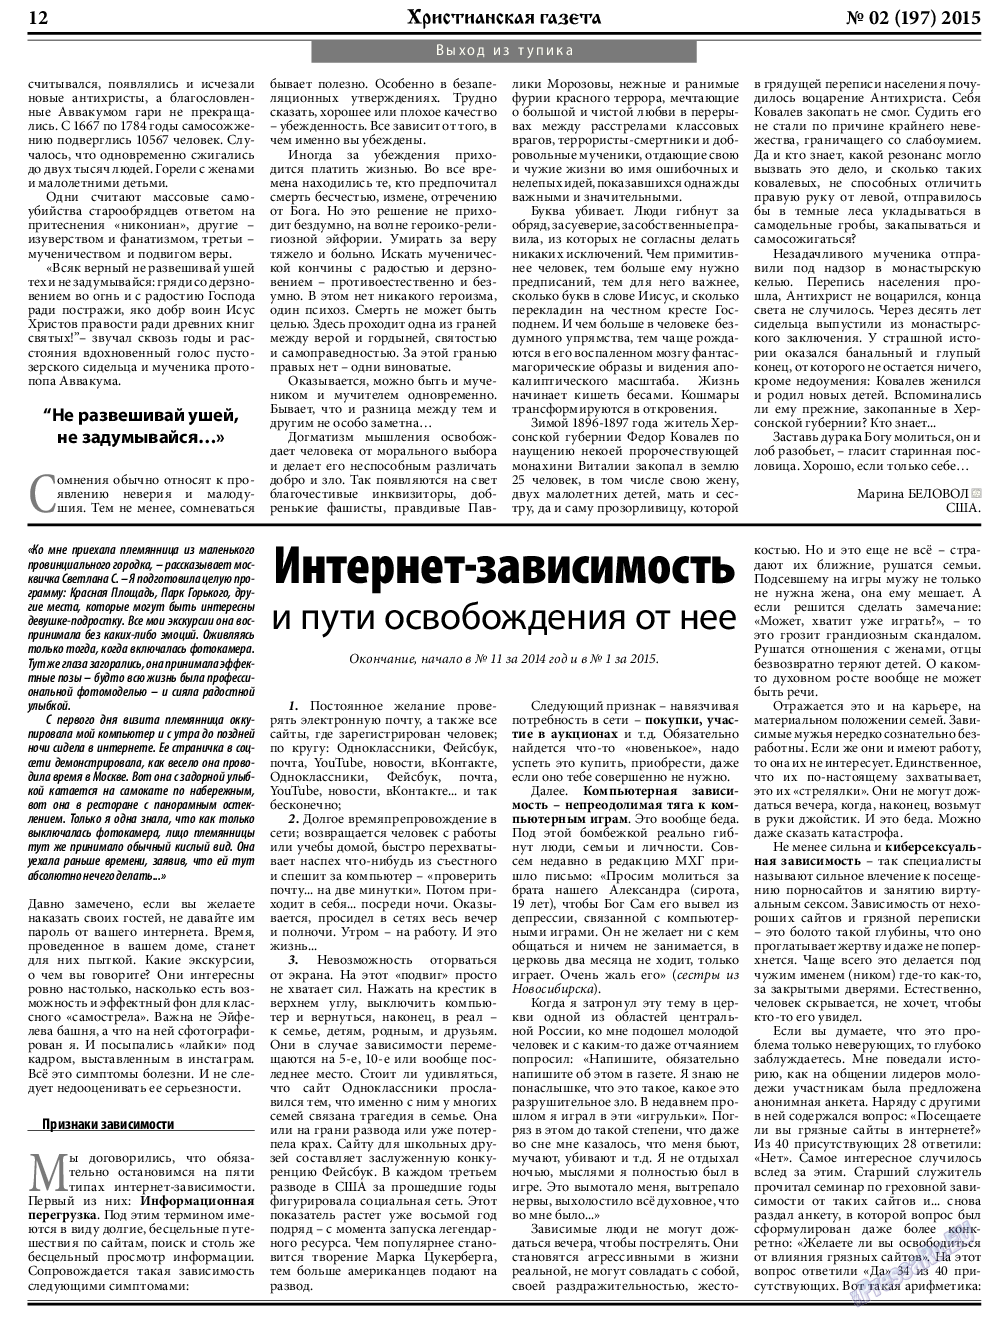 Христианская газета, газета. 2015 №2 стр.12